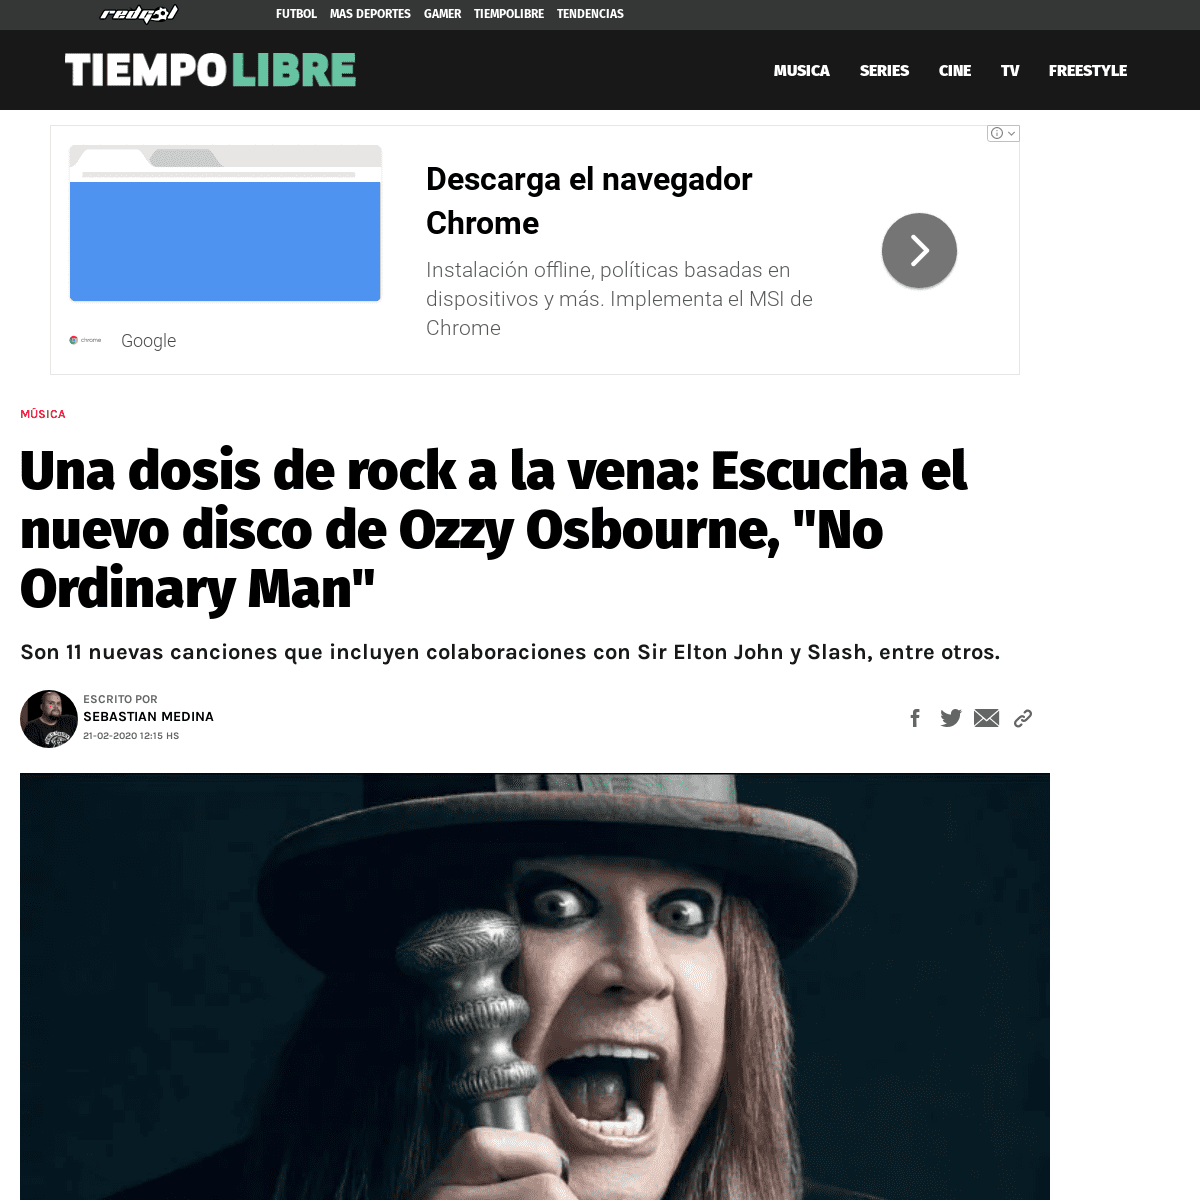 A complete backup of redgol.cl/tiempolibre/Escucha-el-nuevo-disco-de-Ozzy-Osbourne-No-Ordinary-Man-20200221-0039.html